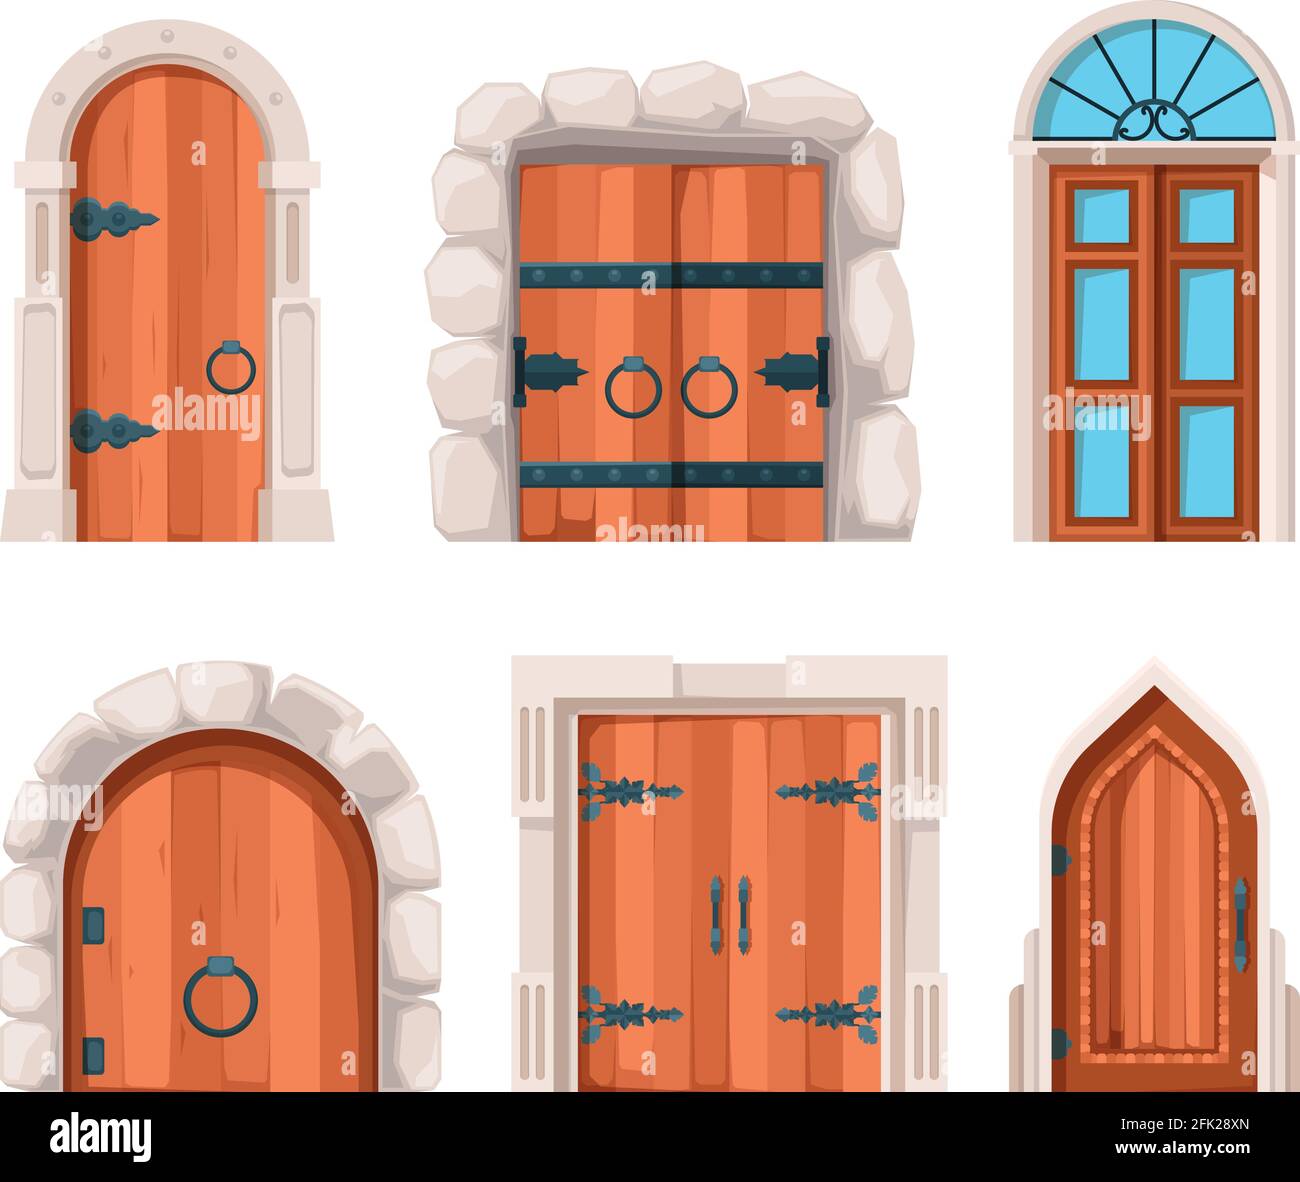 Uralte Türen. Holzstein mittelalterlichen und alten Gebäudetüren und Tore aus Schlössern Vektor-Designs Stock Vektor